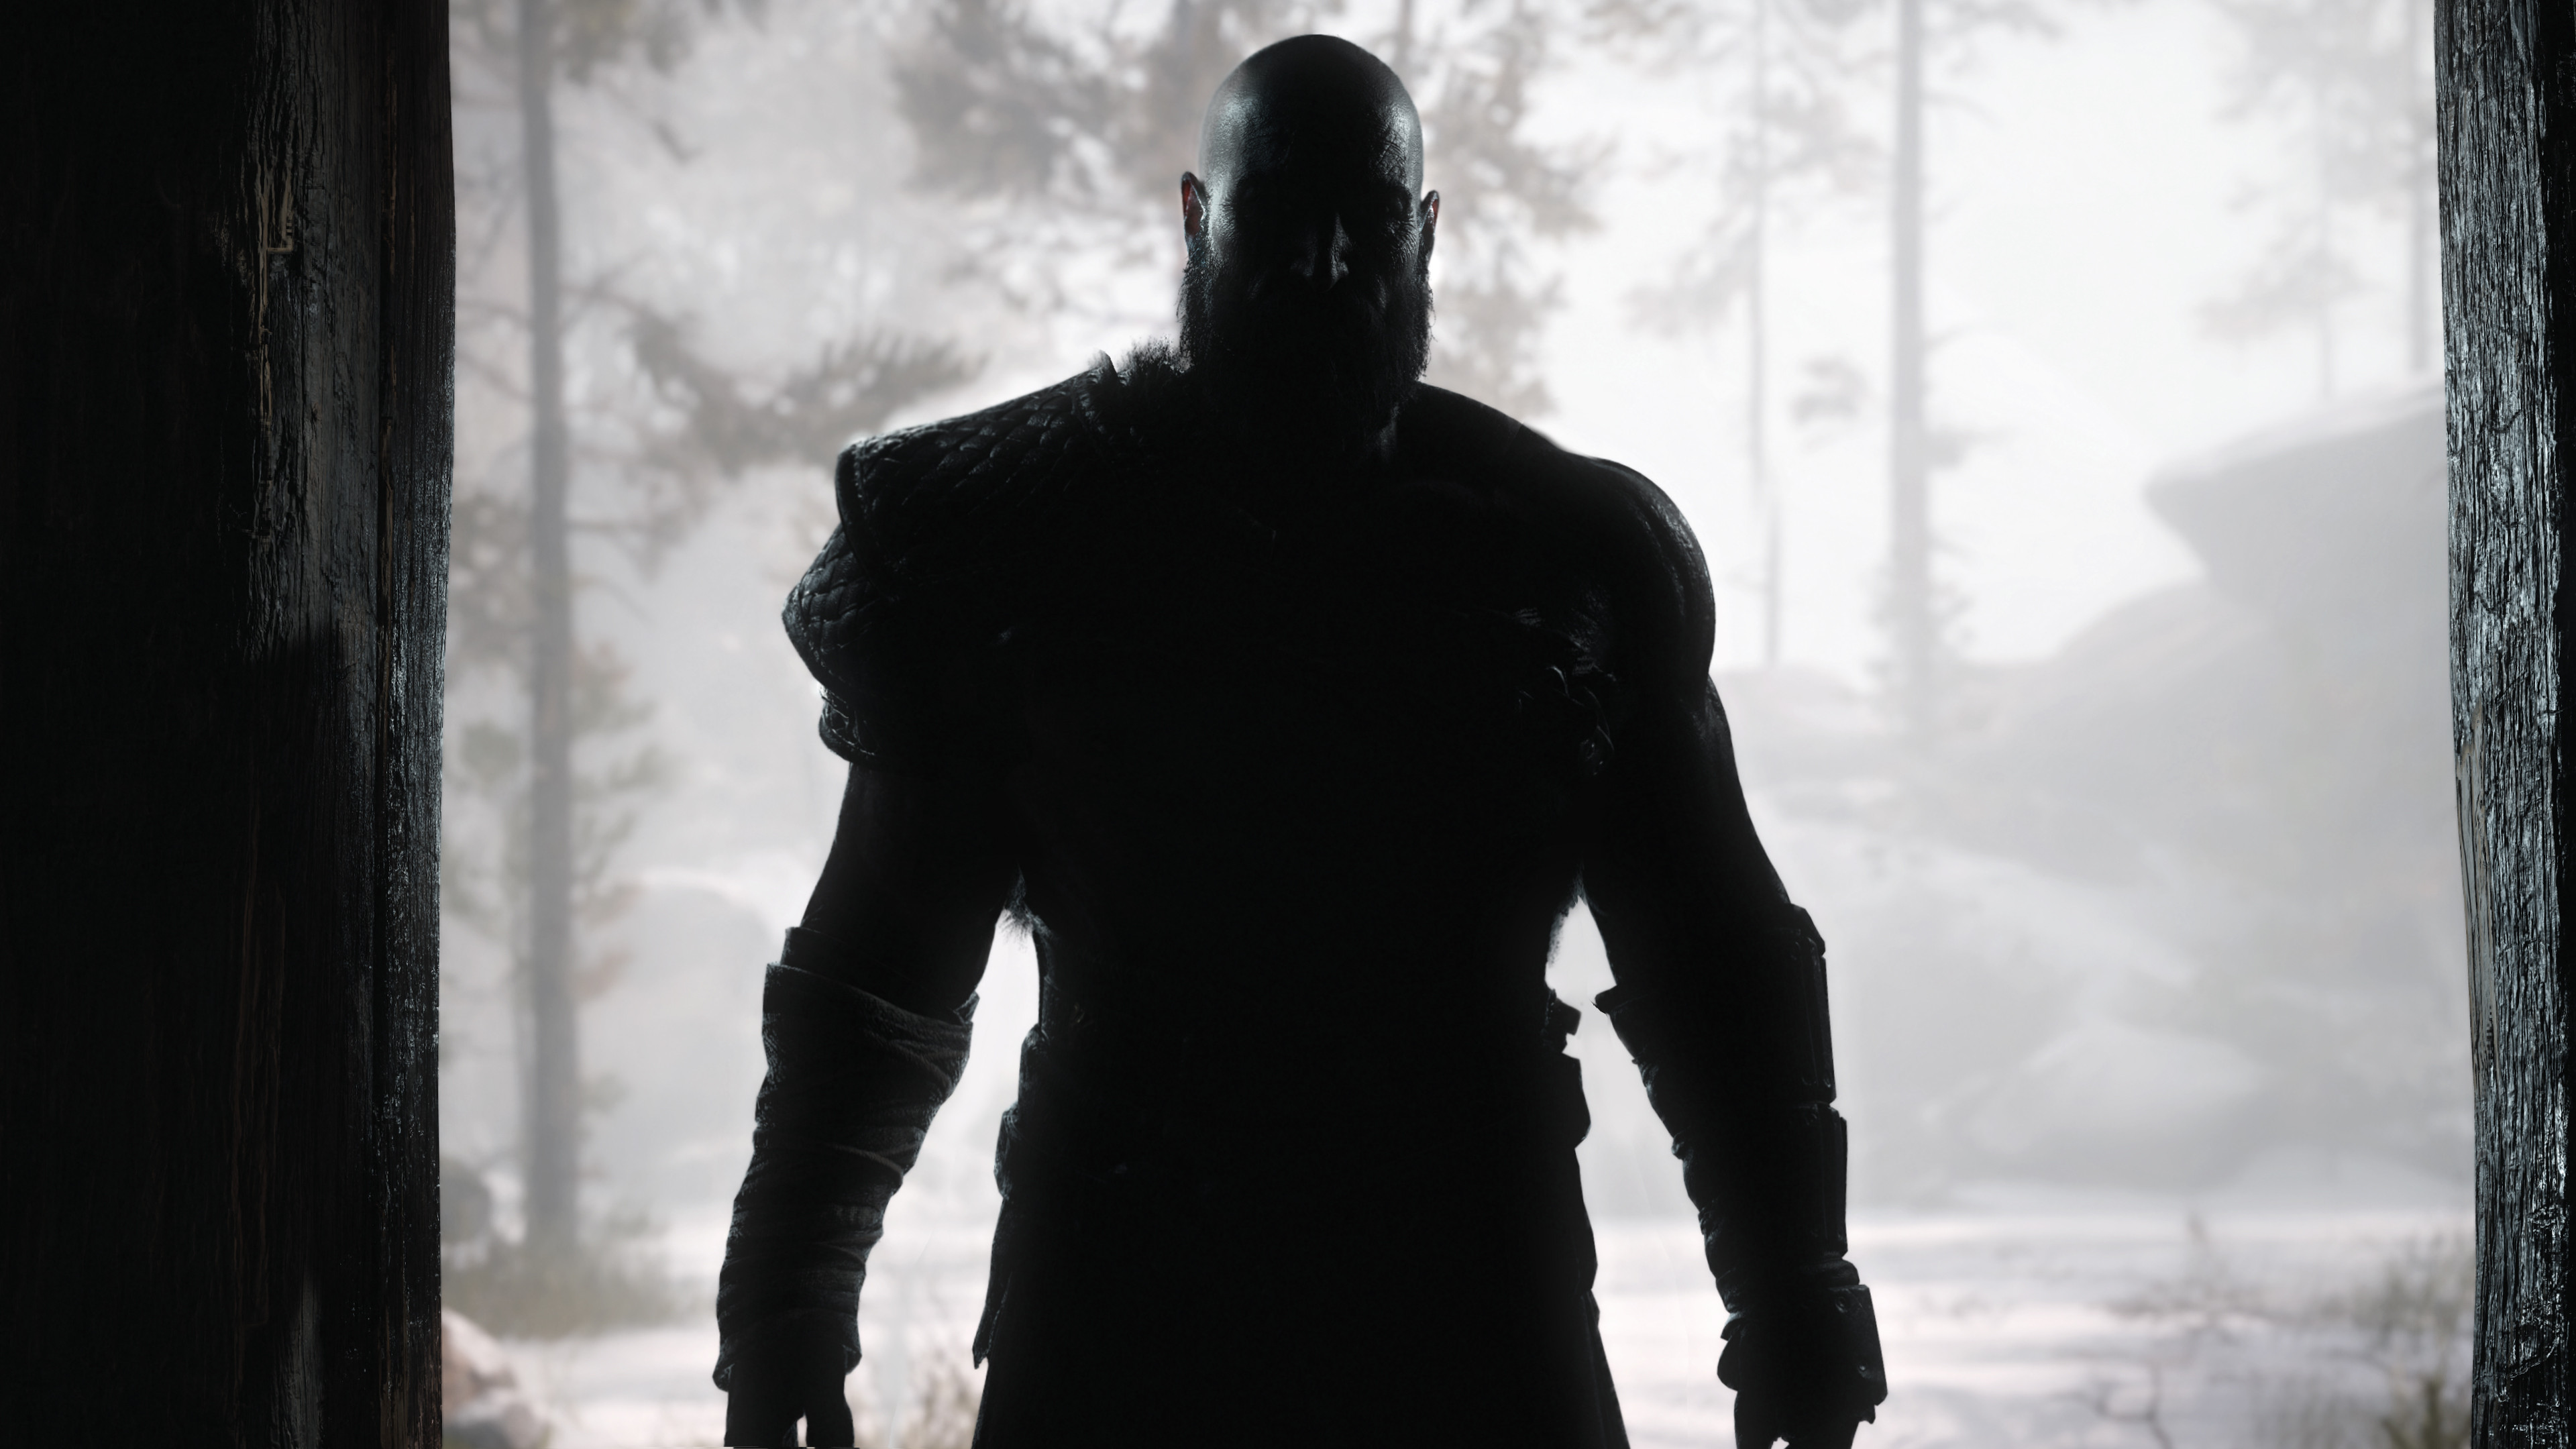 Kratos God of War 4K320188770 - Kratos God of War 4K - War, Kratos, Harbinger, God